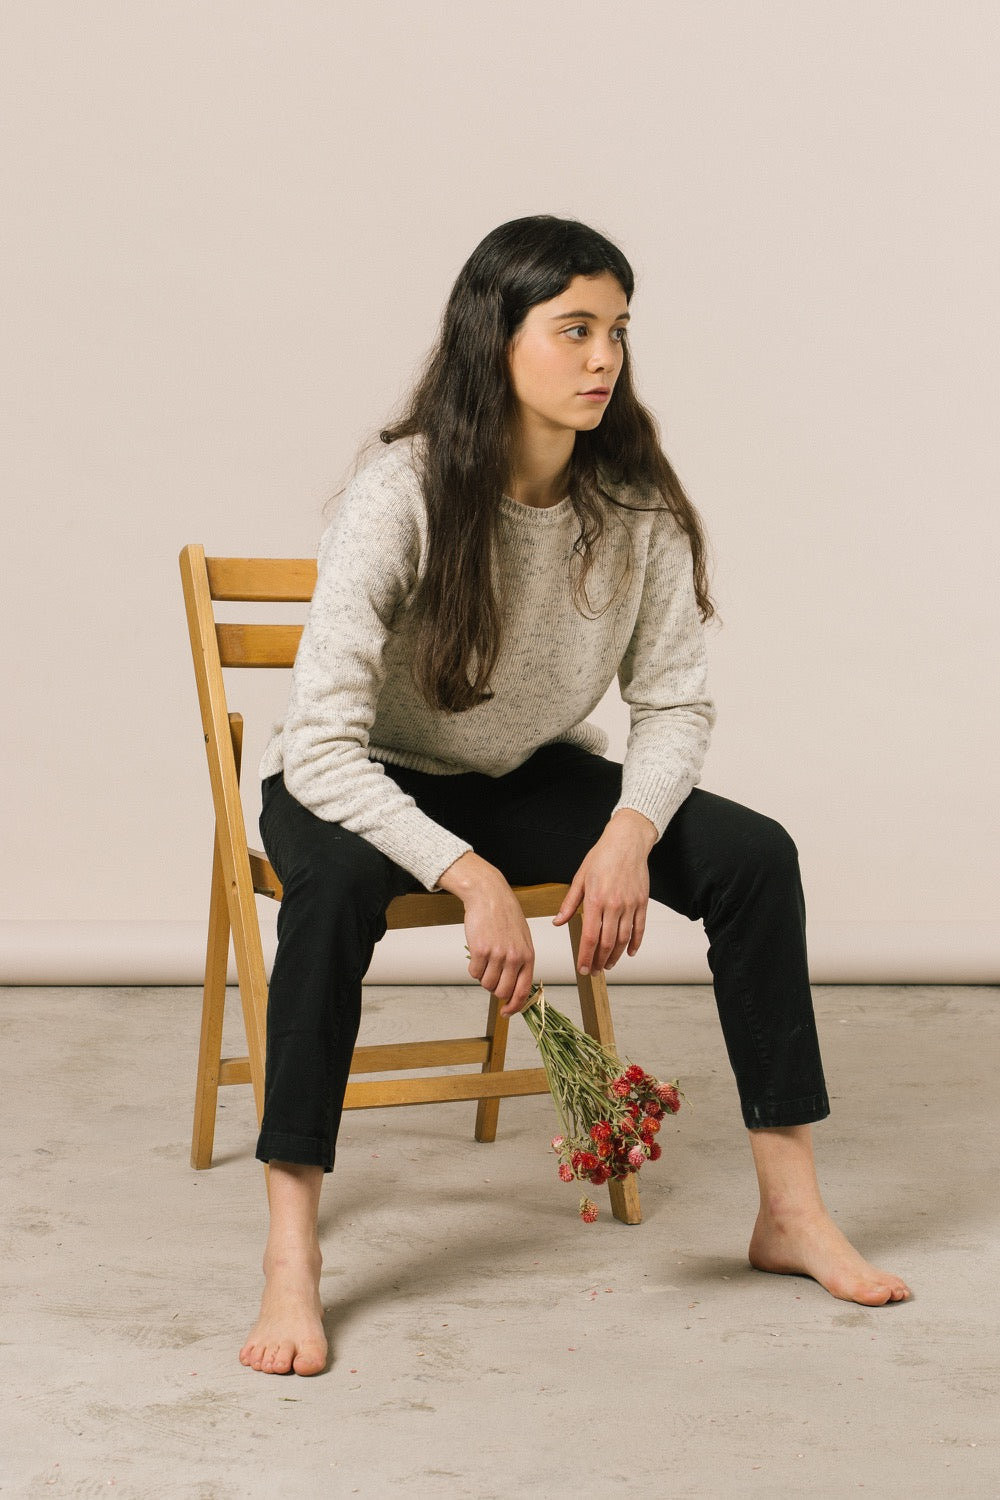 Modelo sentada en una silla de madera con unas flores rojas en la mano.